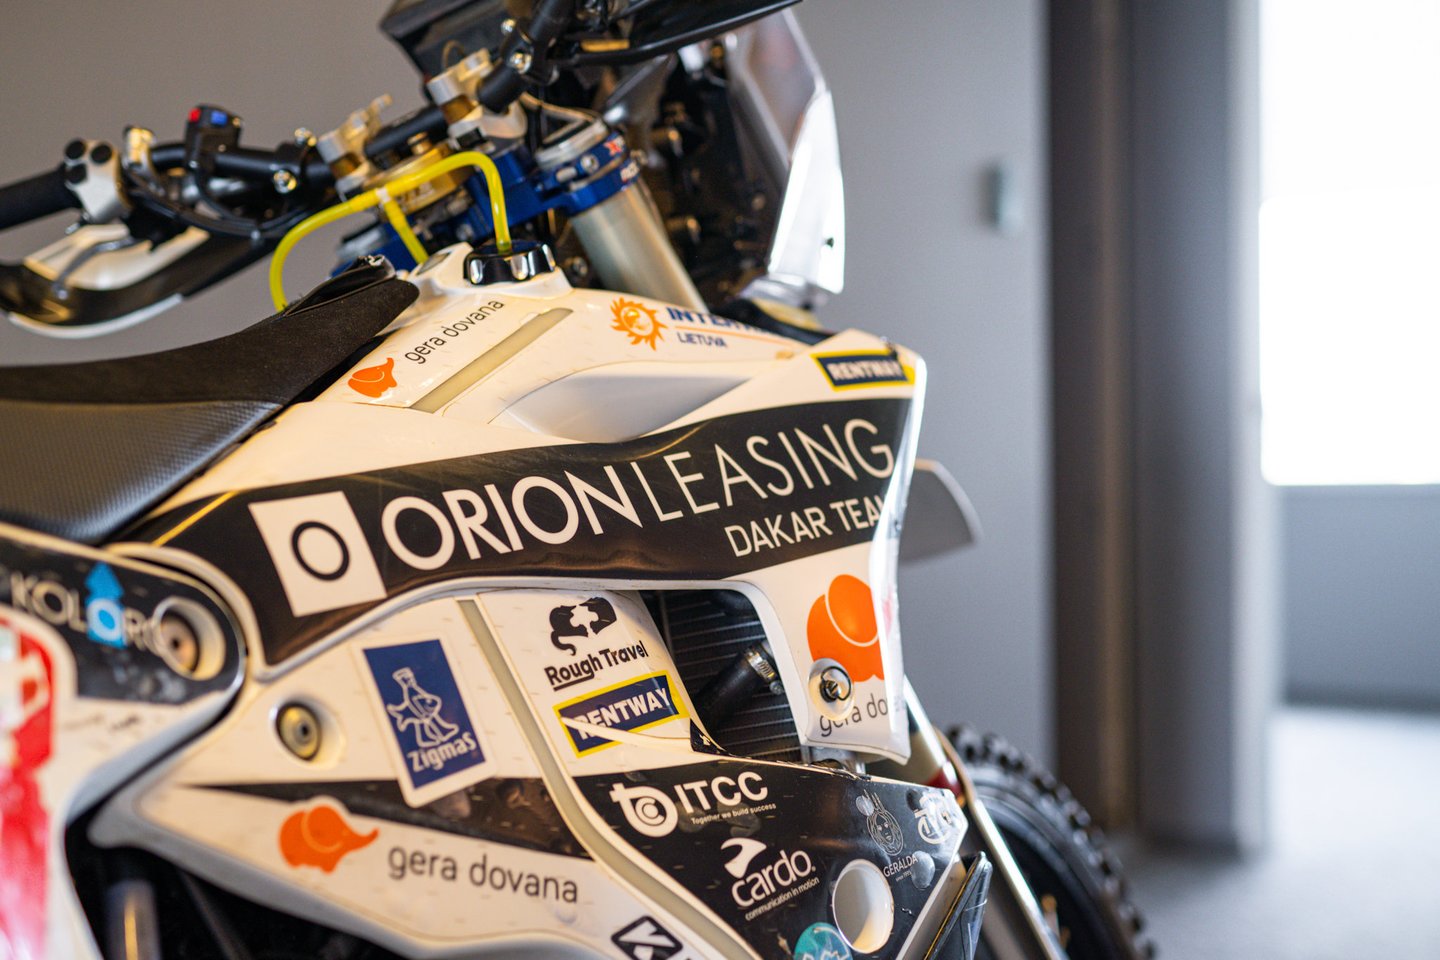 Įpusėjus 2022 metų moto sporto sezonui, „Orion Dakar team“ lyderis atsisako savo technikos, vos praeitais metais įsigyto „Husqvarna rally“ motociklo ir perleidžia jį į kitas rankas.<br>Pranešėjų spaudai nuotr.